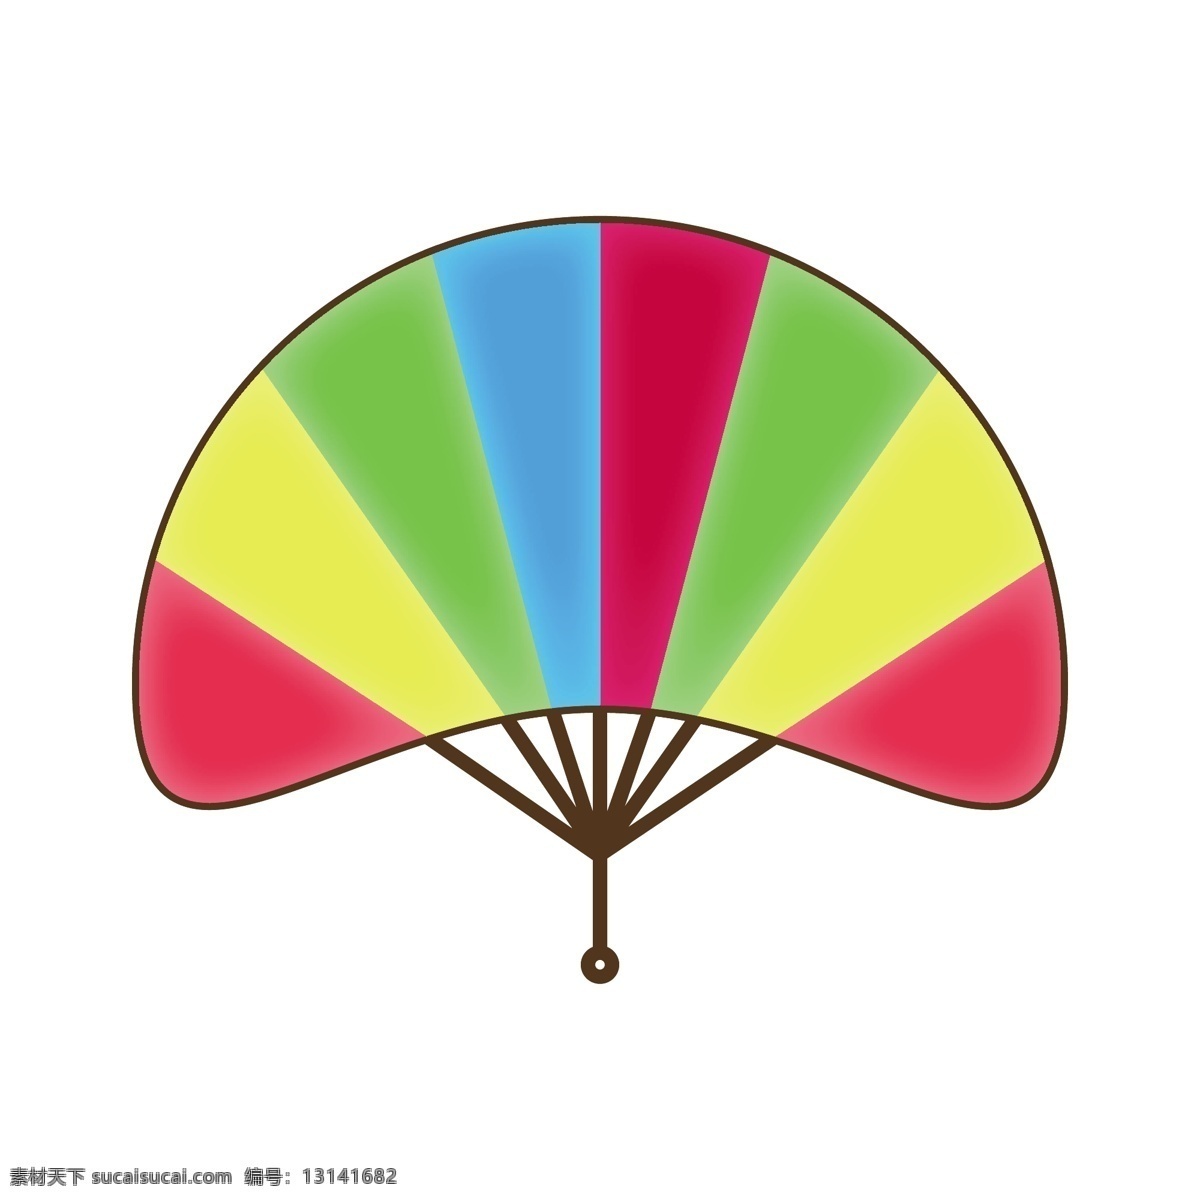 创意 彩色 彩虹 扇子 五颜六色 折叠扇子 夏季手摇扇子